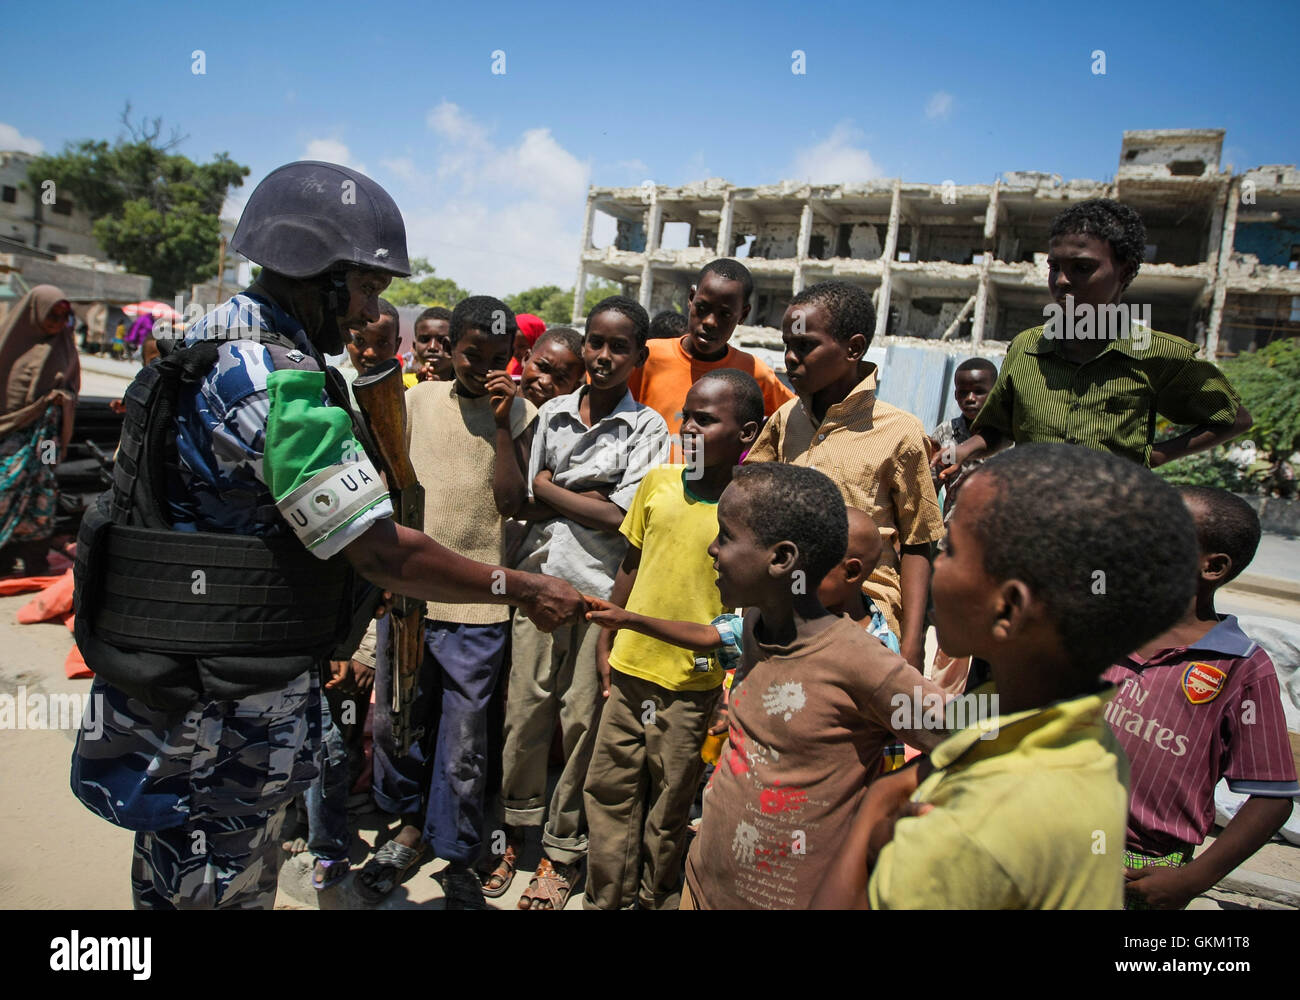 La Somalie, Mogadiscio : Dans un document de cours photos prises et publiées par l'Union africaine et l'équipe de support d'information des Nations Unies 09 novembre, un agent de la police ougandaise agissant comme partie d'une unité de police constituée (FPU) avec la Mission de l'Union de l'Union africaine en Somalie (AMISOM), serre la main avec un groupe d'enfants somaliens au cours d'une patrouille à pied dans le district de Kaa'ran de la capitale Mogadishu. L'AMISOM FPUs travaillent avec leurs homologues de la Force de police somalienne (SPF) en contribuant à assurer la sécurité à Mogadiscio, en plus d'une formation et d'encadrement du SPF sur le maintien de l'ordre techniques et pratiques. Ua-ONU Banque D'Images